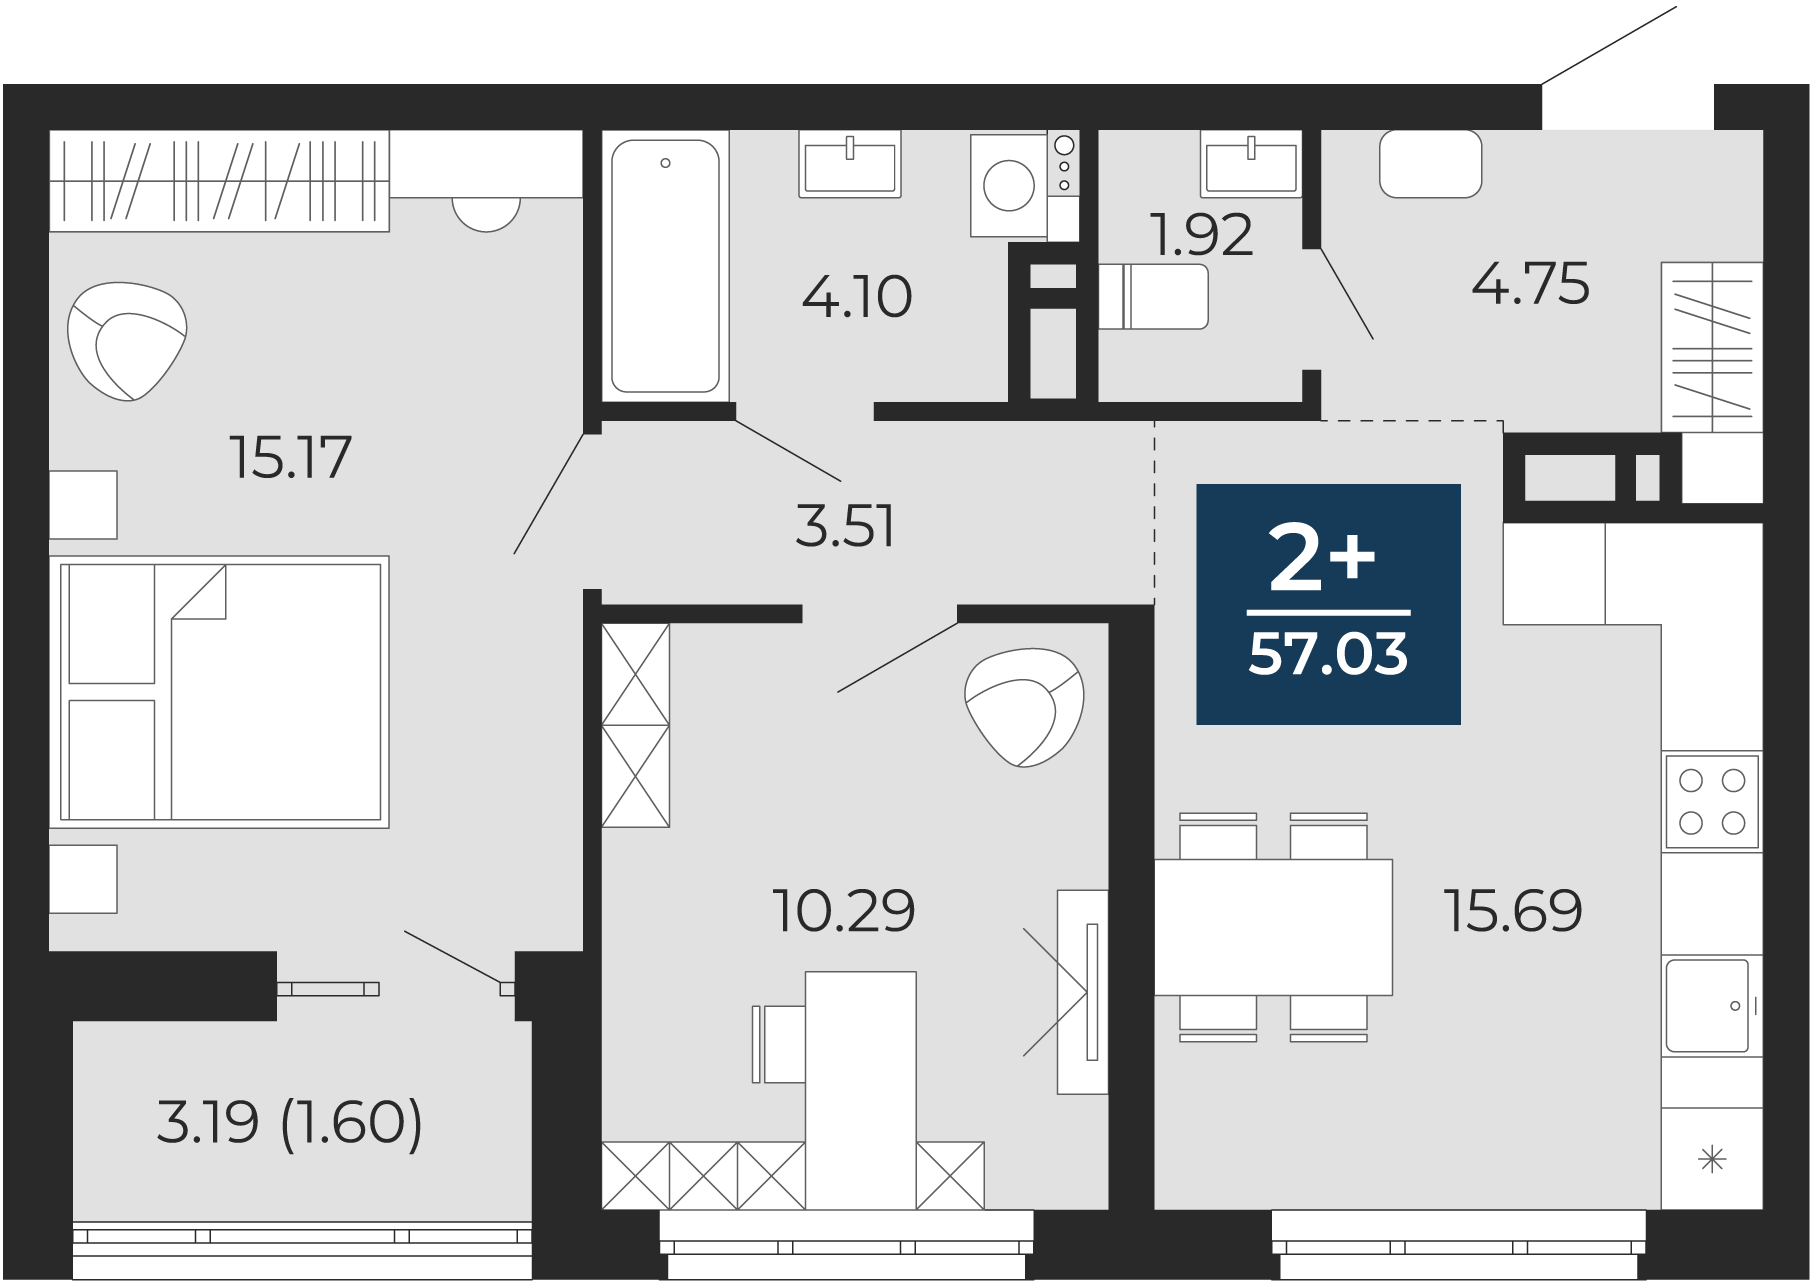 Квартира № 389, 2-комнатная, 57.03 кв. м, 8 этаж